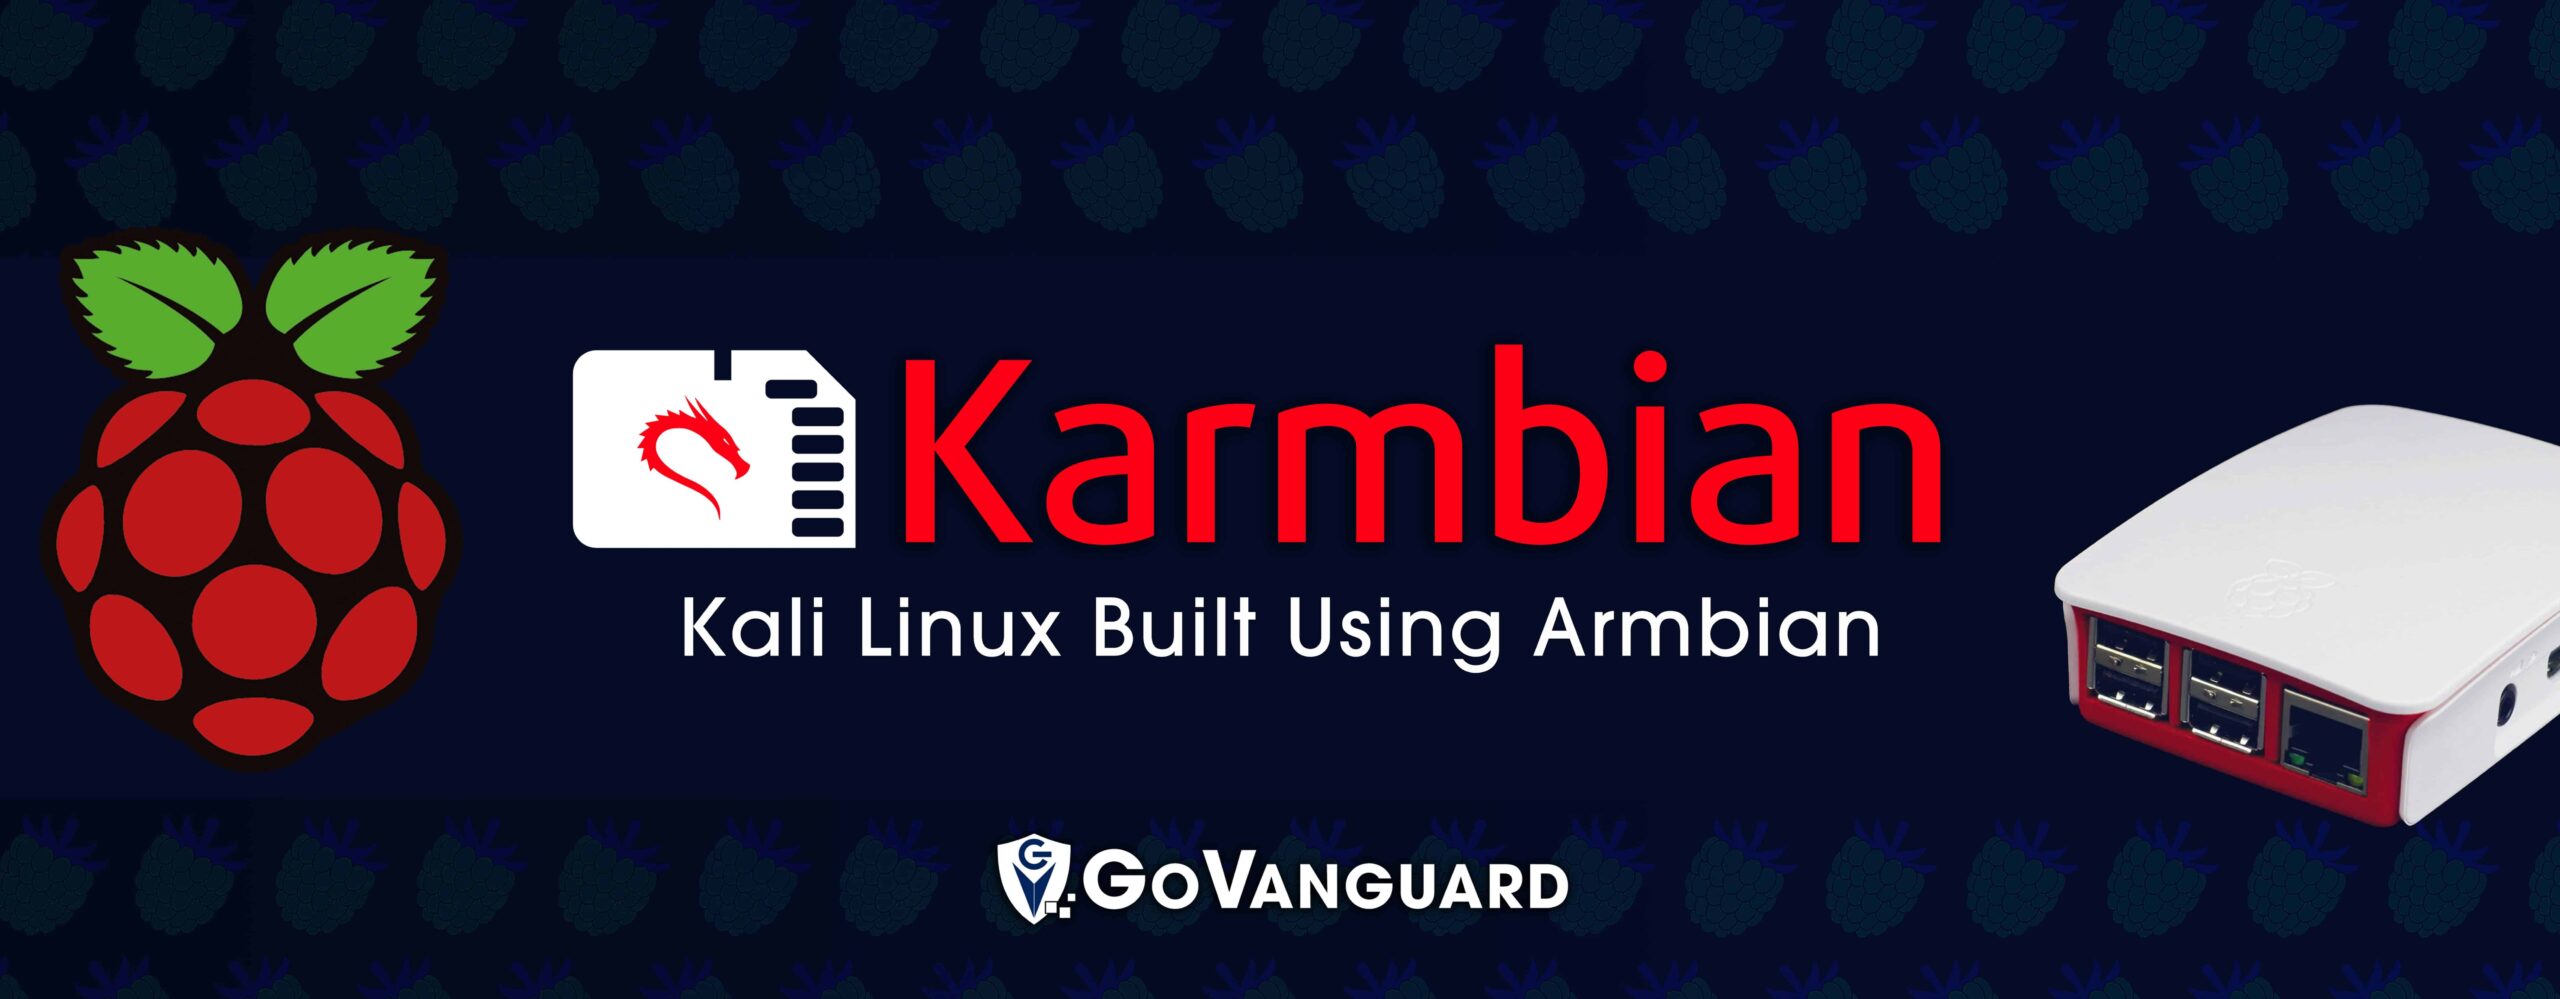 Karmbian é uma distribuição ARM Linux para hackers éticos